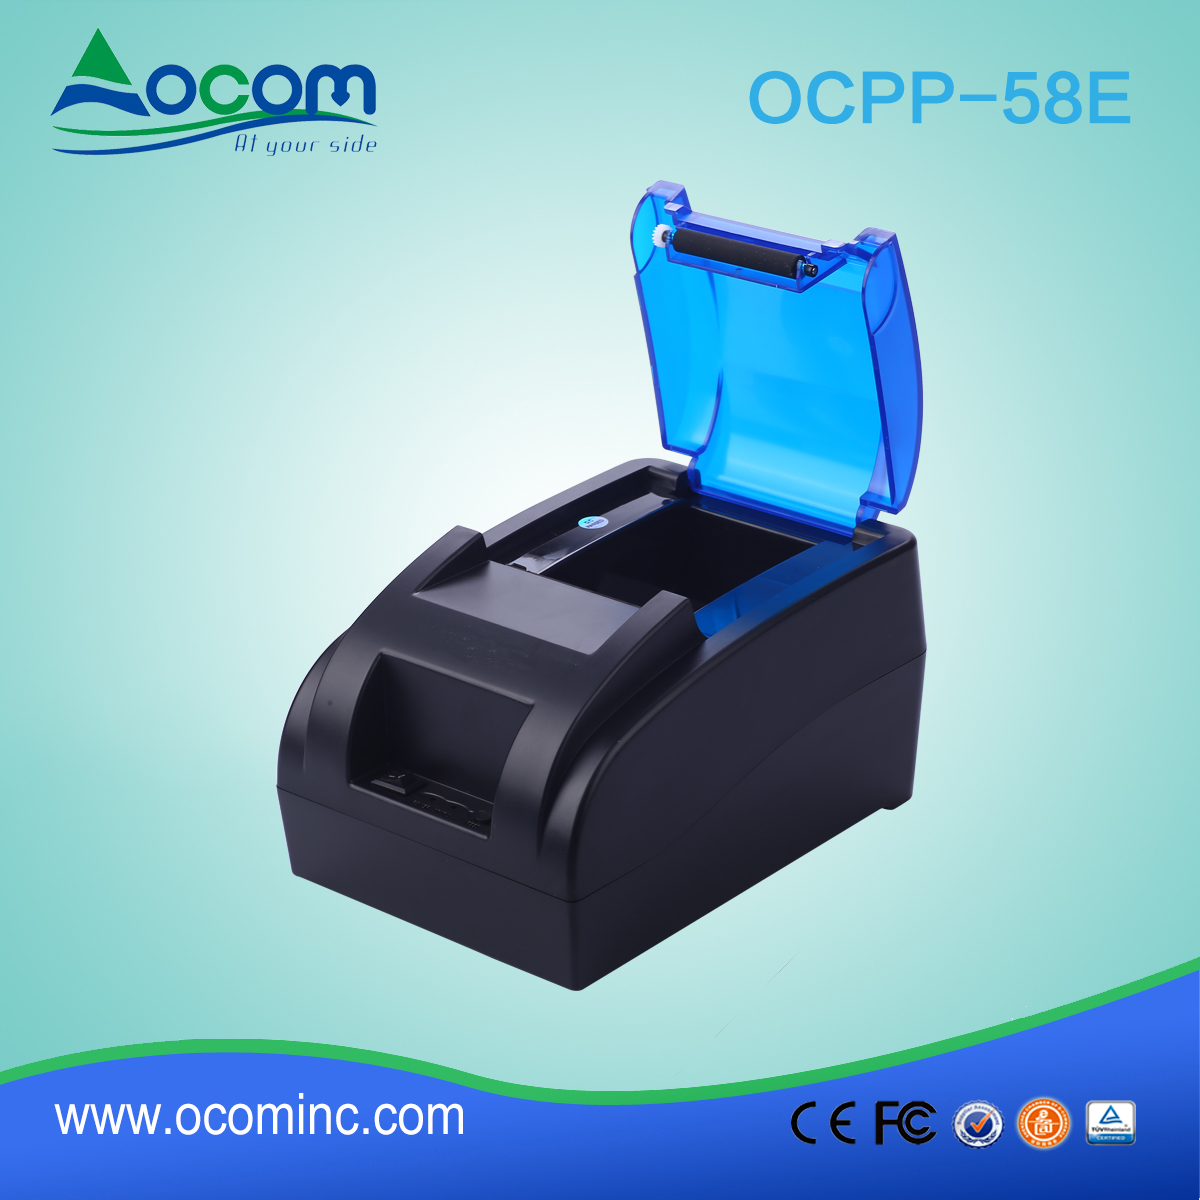 OCPP -58E-U Imprimante ticket thermique 58 mm avec adaptateur secteur intégré